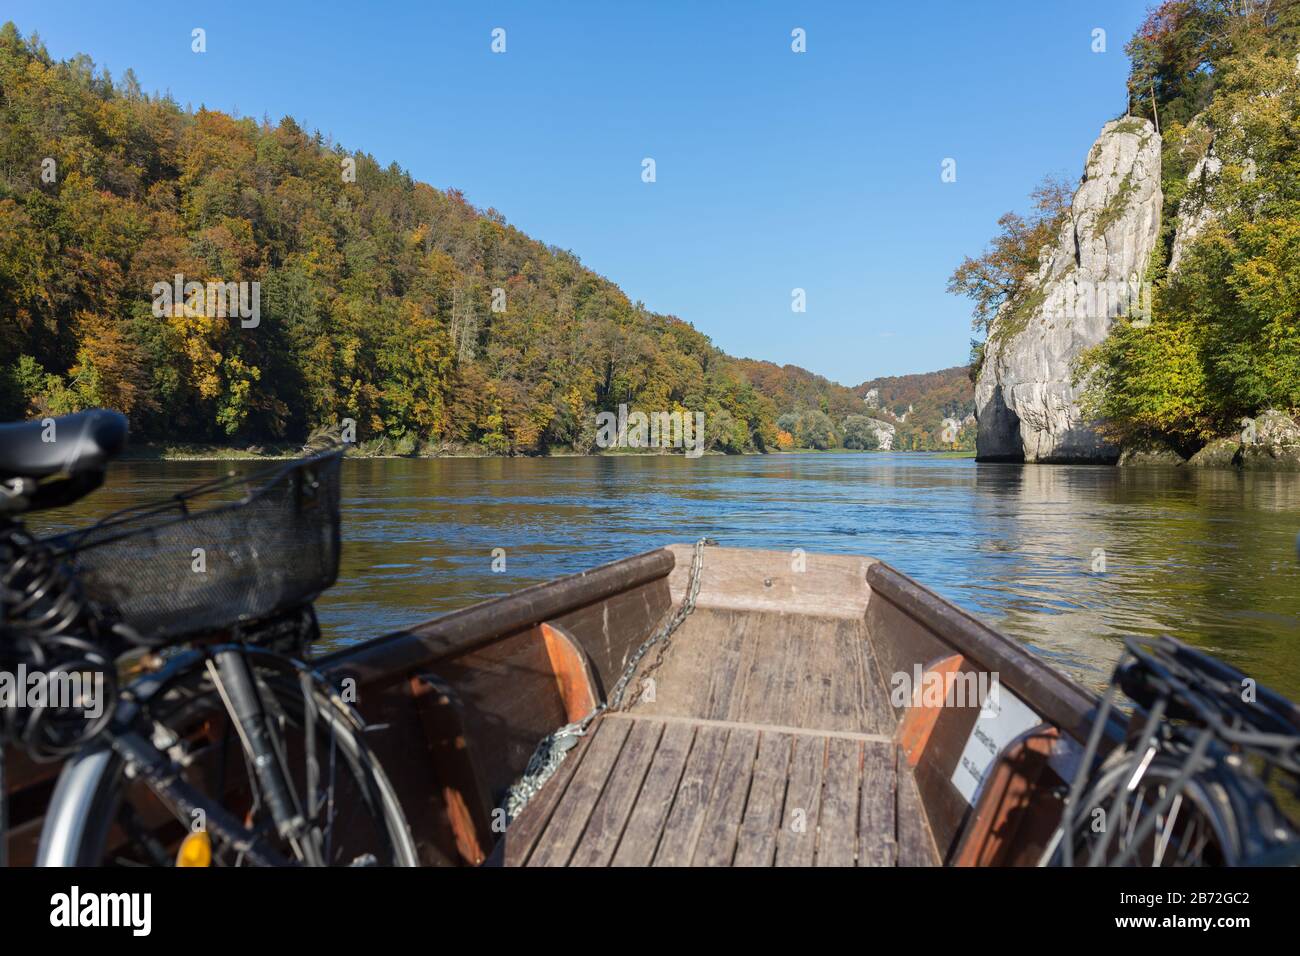 Vista da una barca in legno che naviga sul danubio (Donau). Vicino al cosiddetto "Drondurchbruch" (canyon stretto). Sensazione di libertà e avventura. Foto Stock